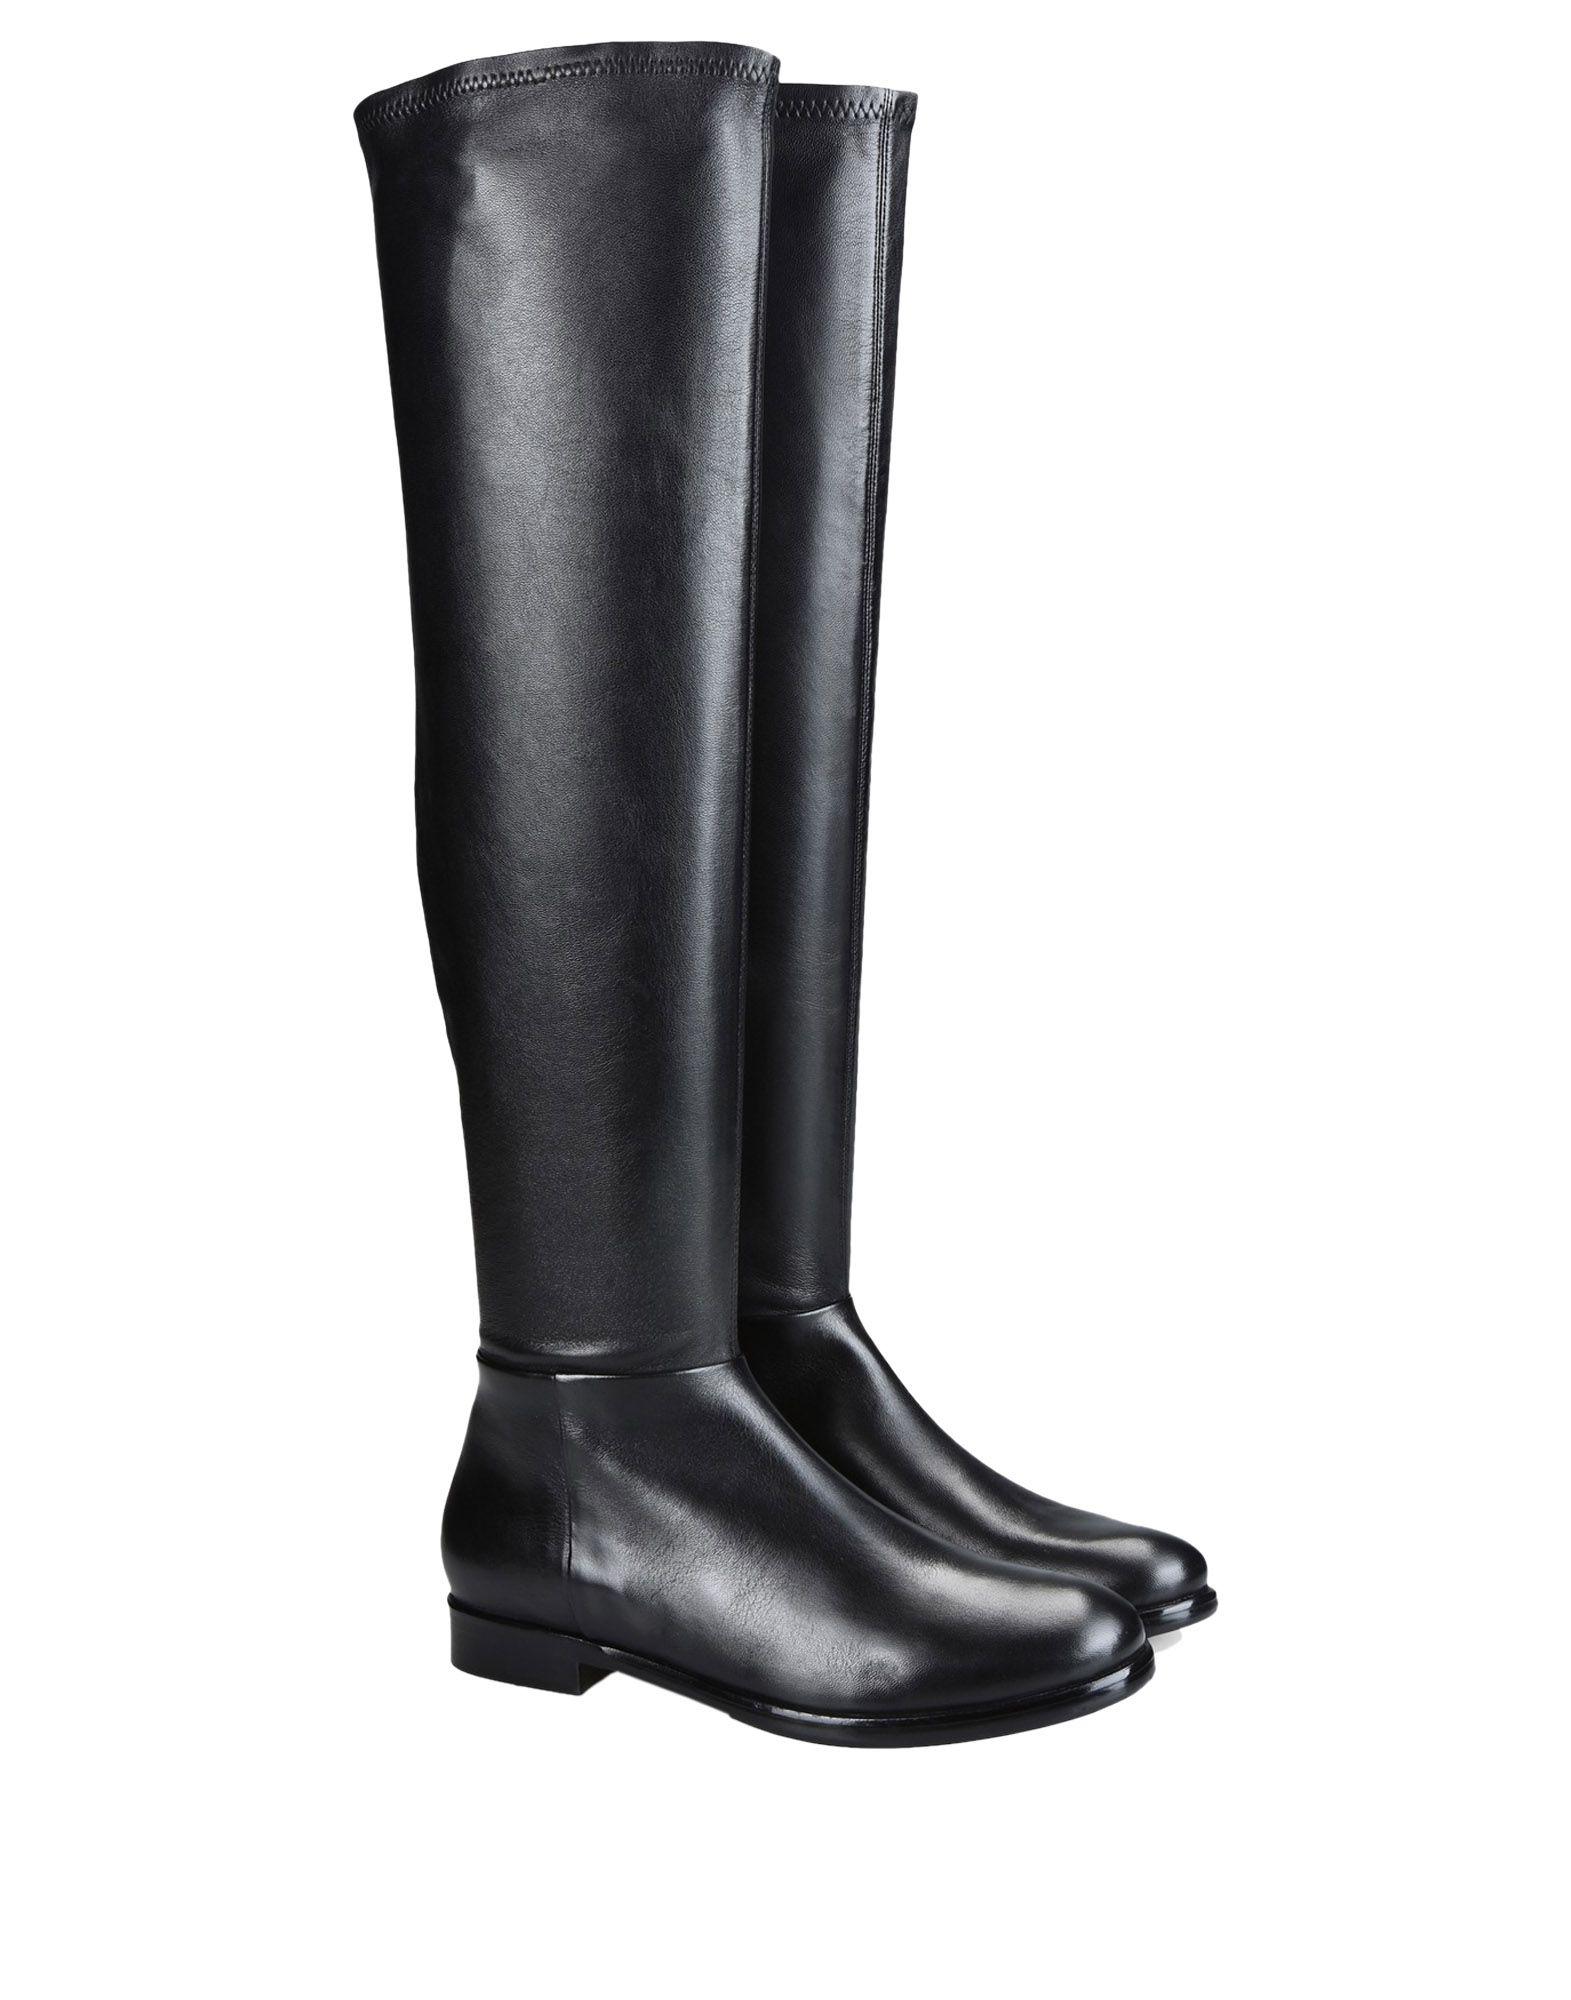 Emporio Armani Rubber Boots in Black - Lyst